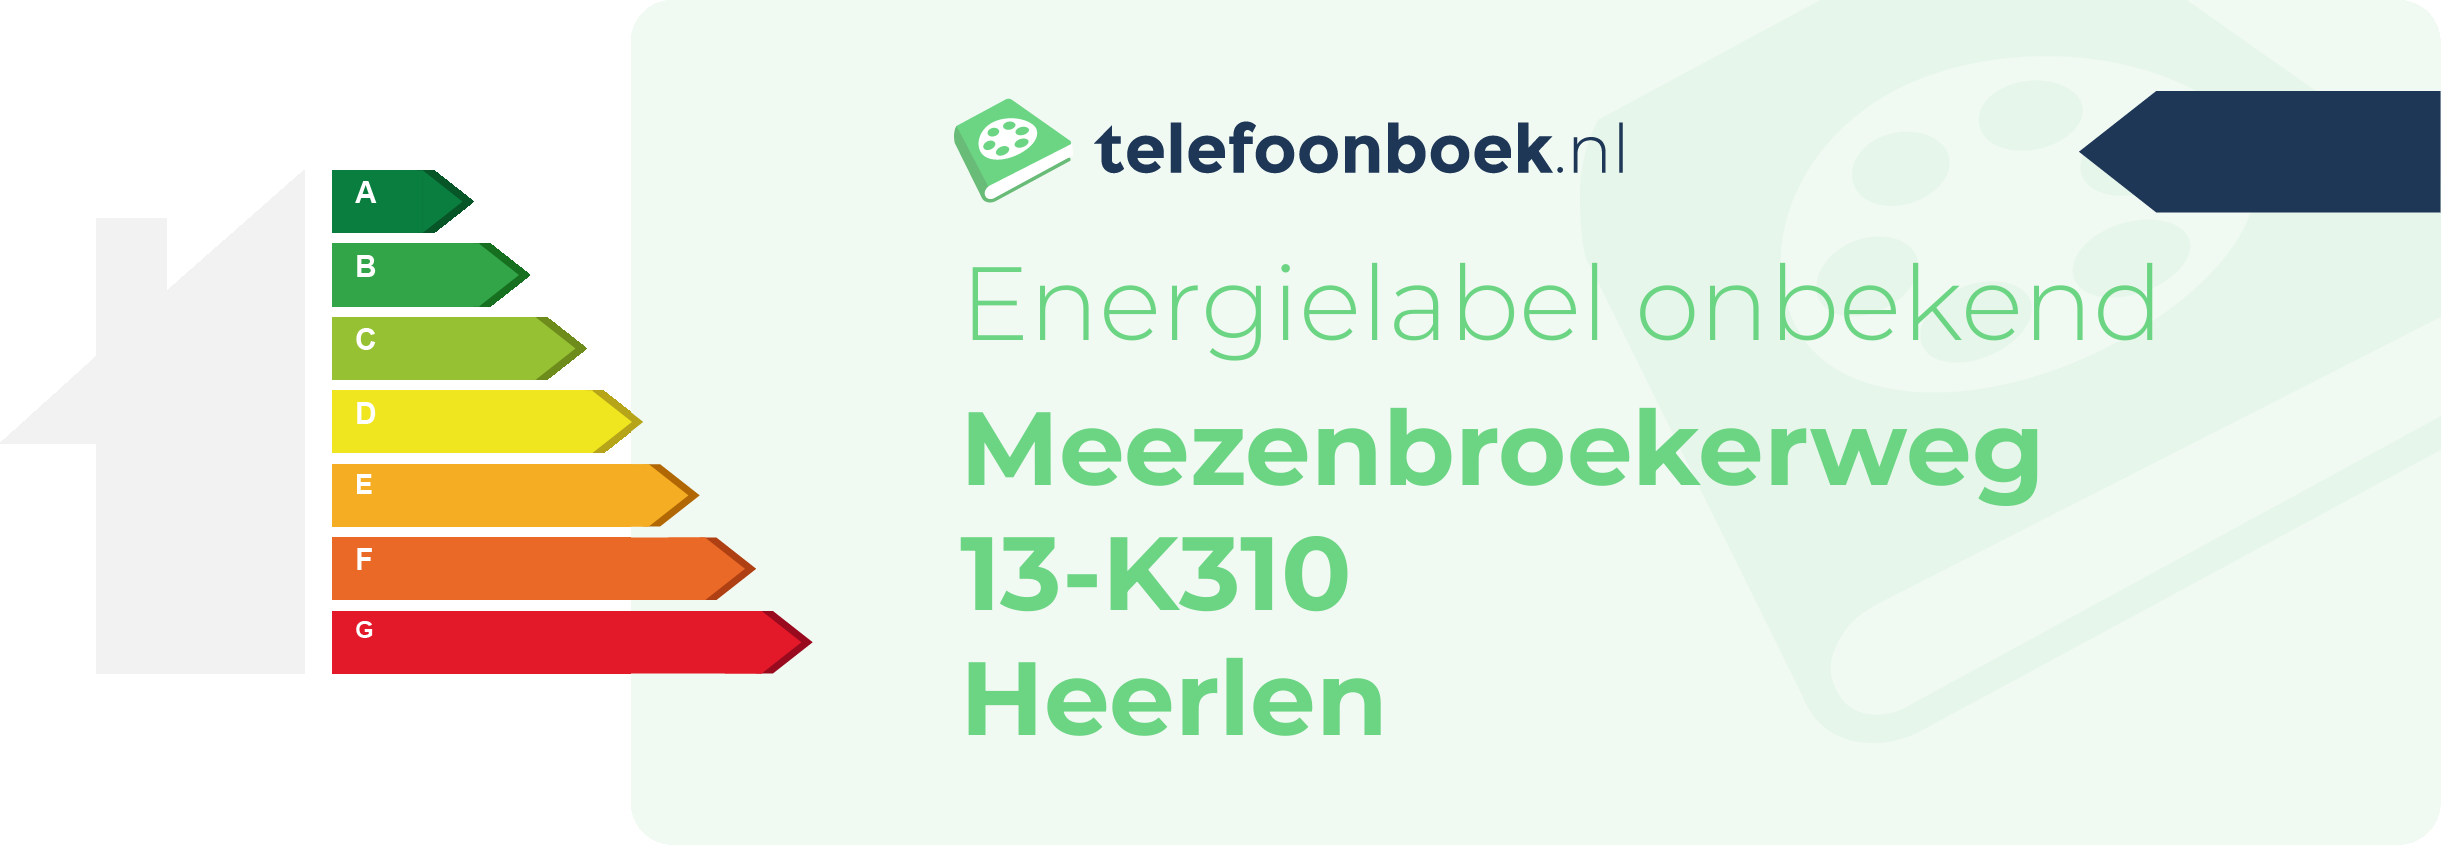 Energielabel Meezenbroekerweg 13-K310 Heerlen